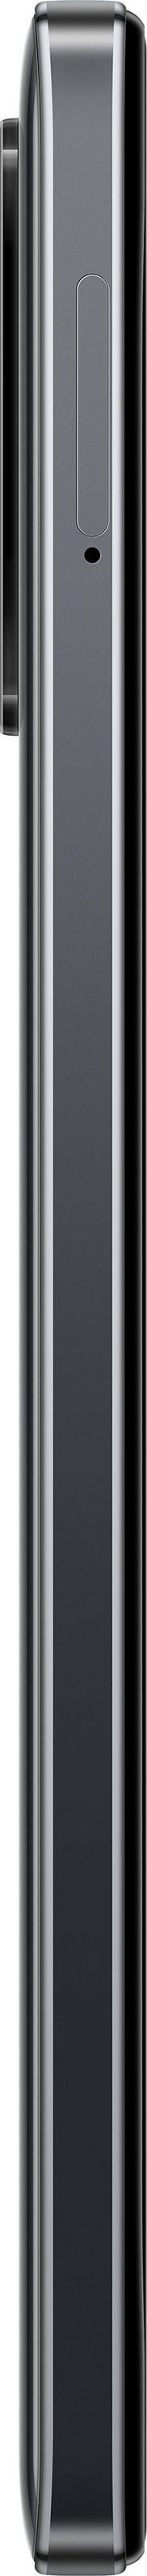 Xiaomi Smartphone »POCO M4 Pro«, Power Black, 16,33 cm/6,43 Zoll, 256 GB Speicherplatz, 64 MP Kamera